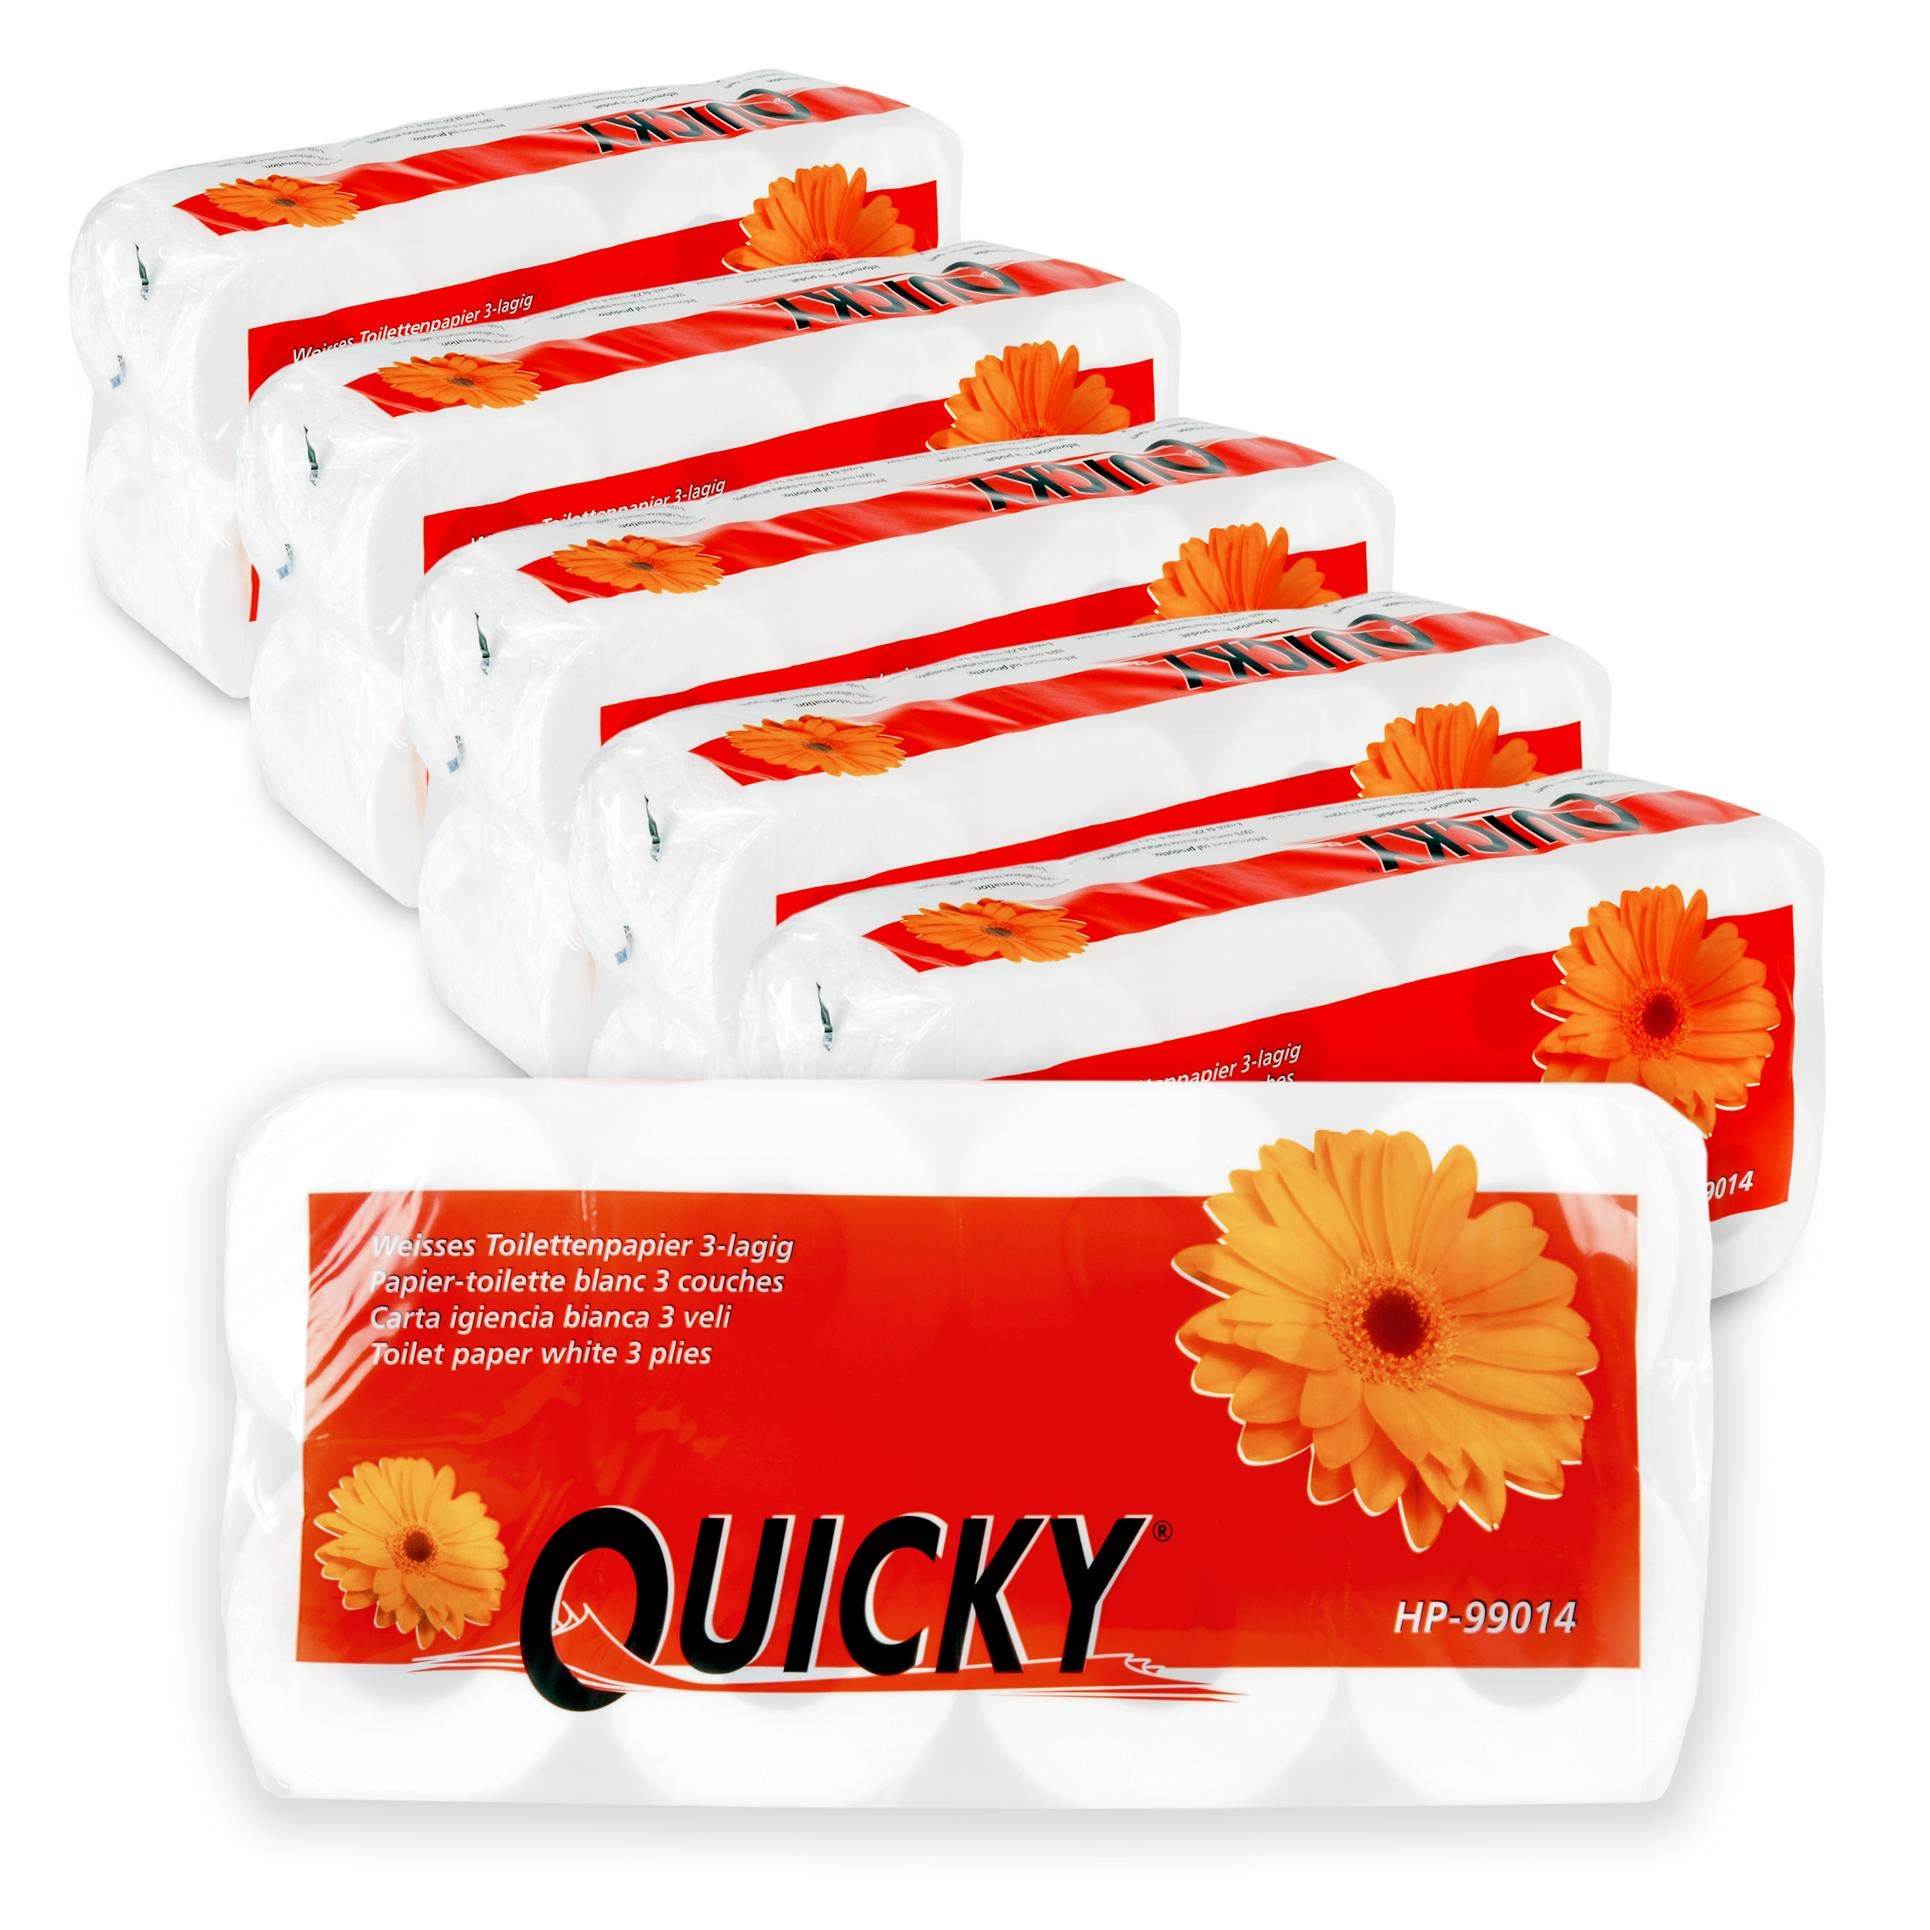 Quicky Toilettenpapier motivgeprägt | 48 Rollen Klopapier, Vorratspack | extra weich und reißfest | aus hochwertigem super weißem Zellstoff | 3-lagig, 250 Blatt | (6 x 8 Rollen)